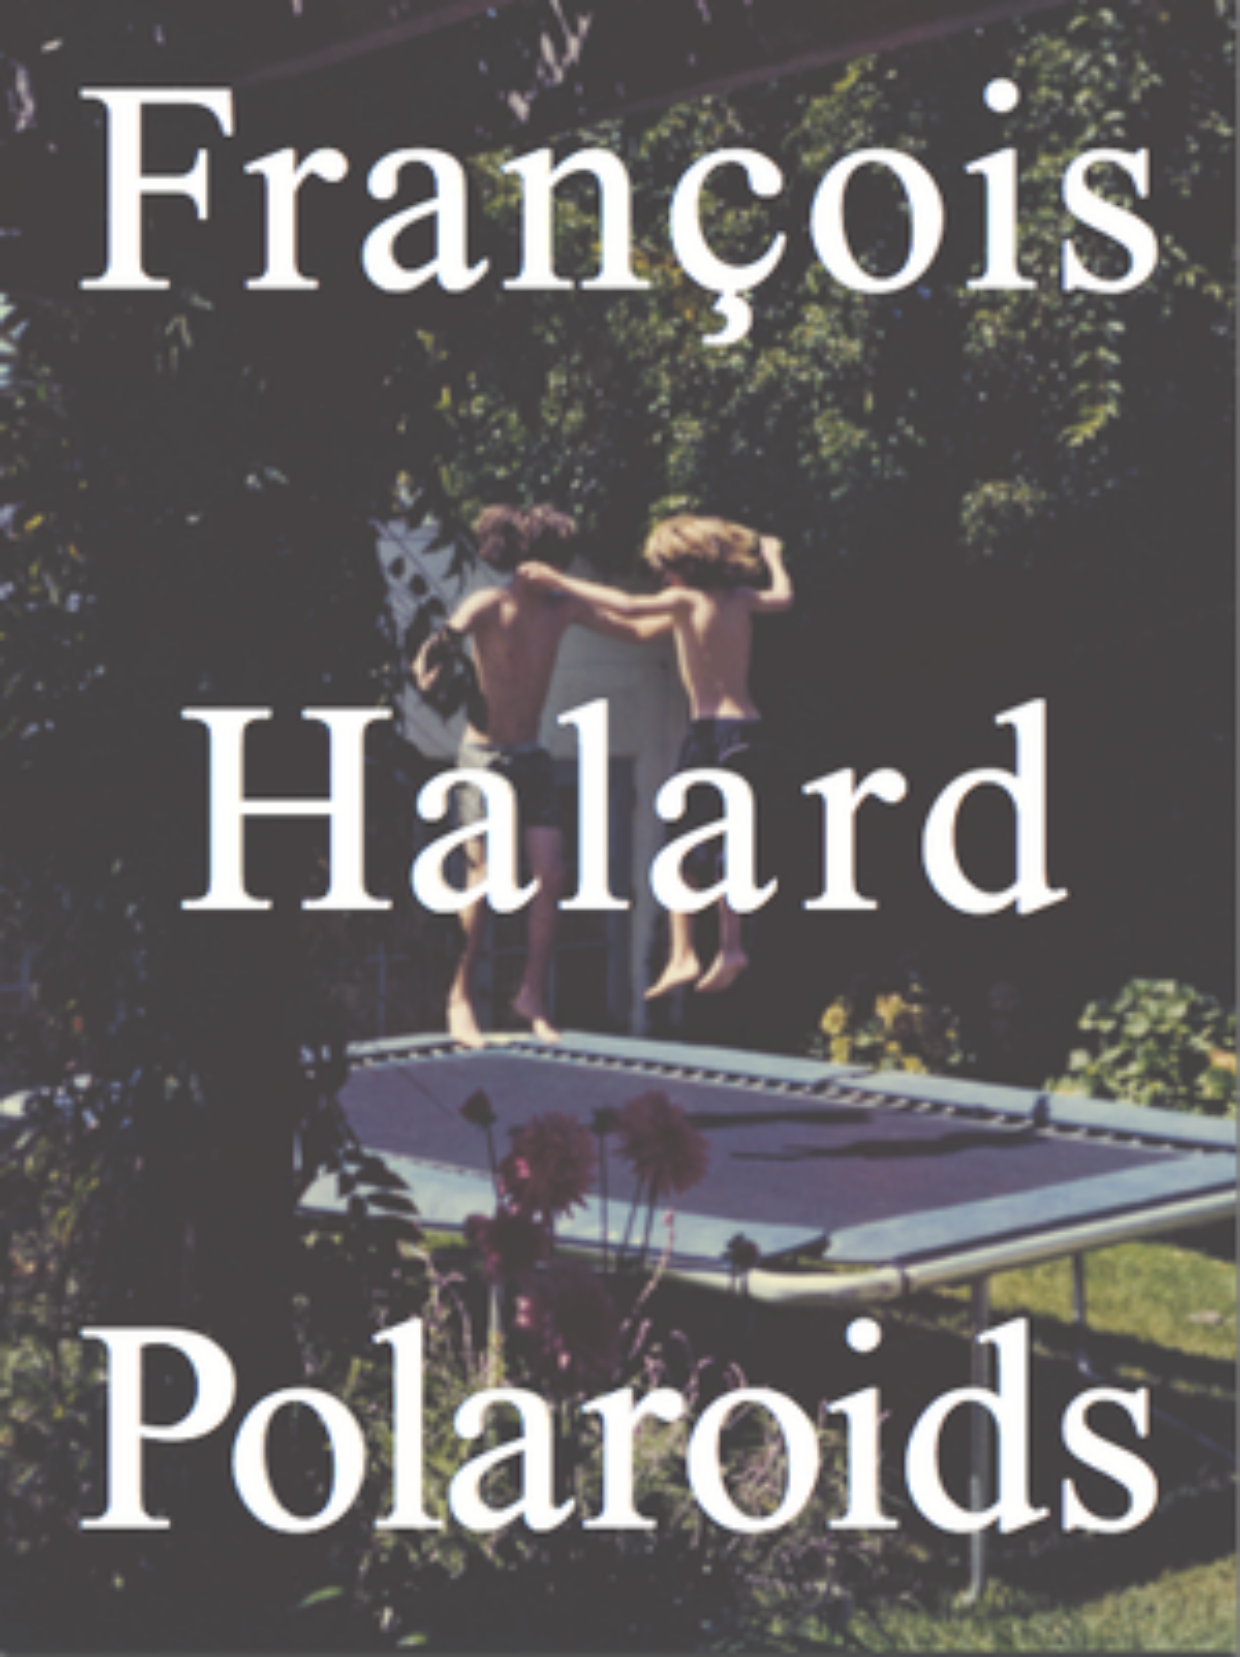 Polaroids by François Halard | 2